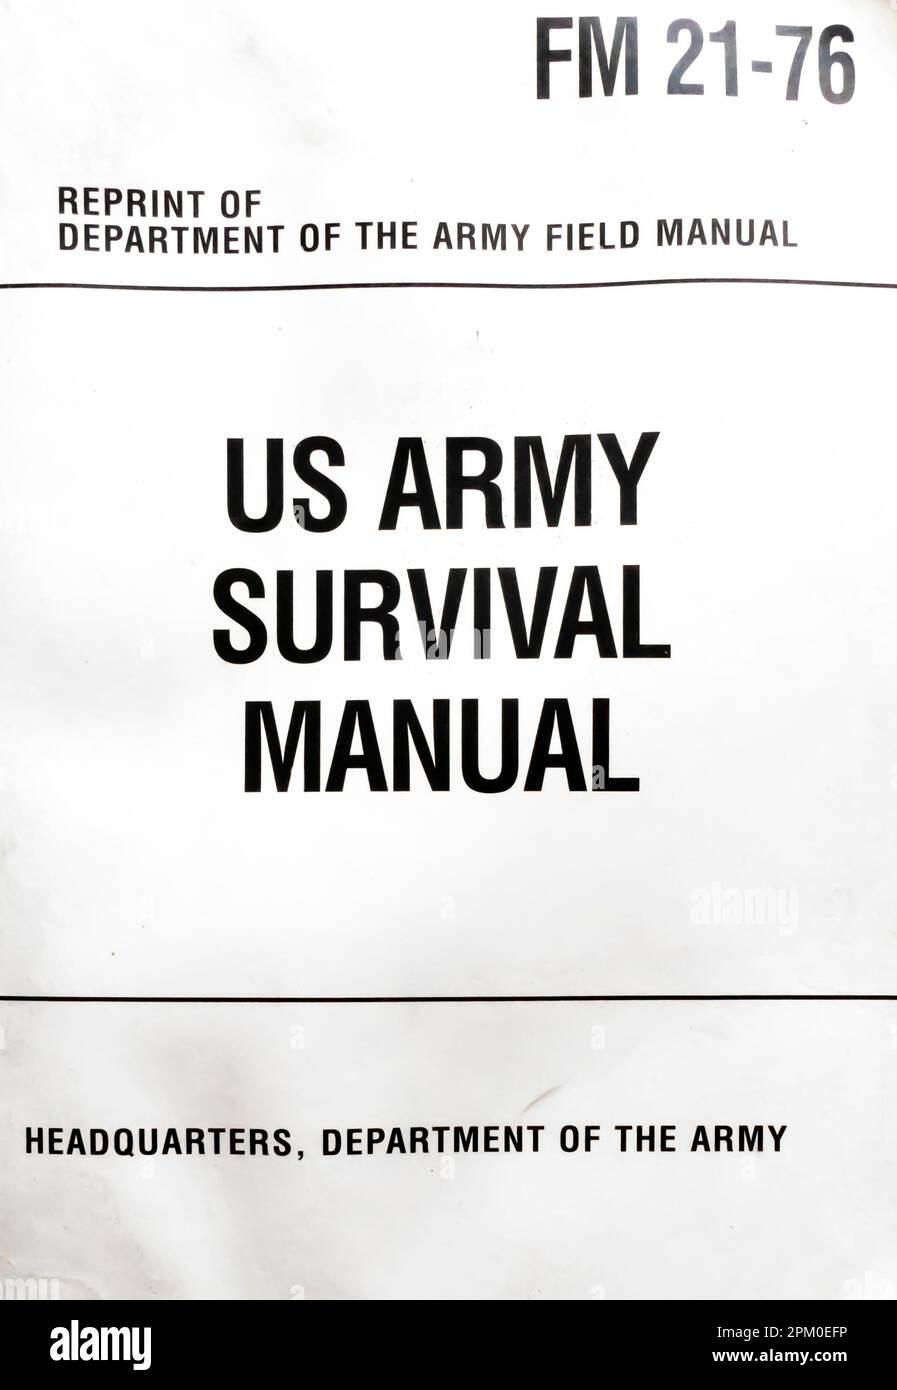 Manual de Supervivencia del Ejército de EE.UU. Libro por el Departamento de Defensa de los Estados Unidos fm 21-75 1956 Foto de stock